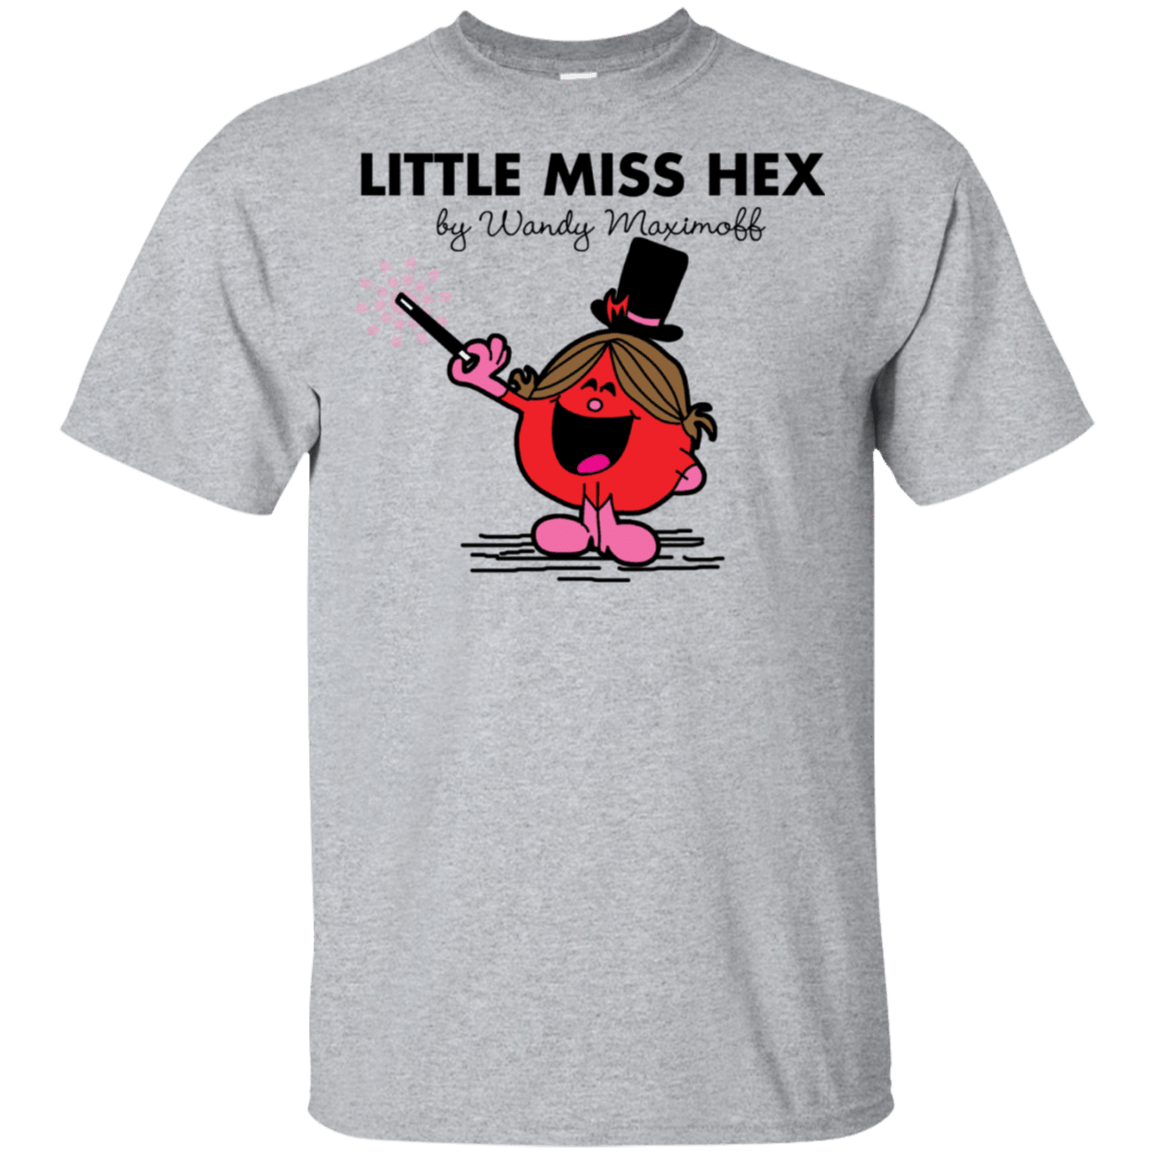 T-Shirts Sport Grey / S Little Miss Hex T-Shirt